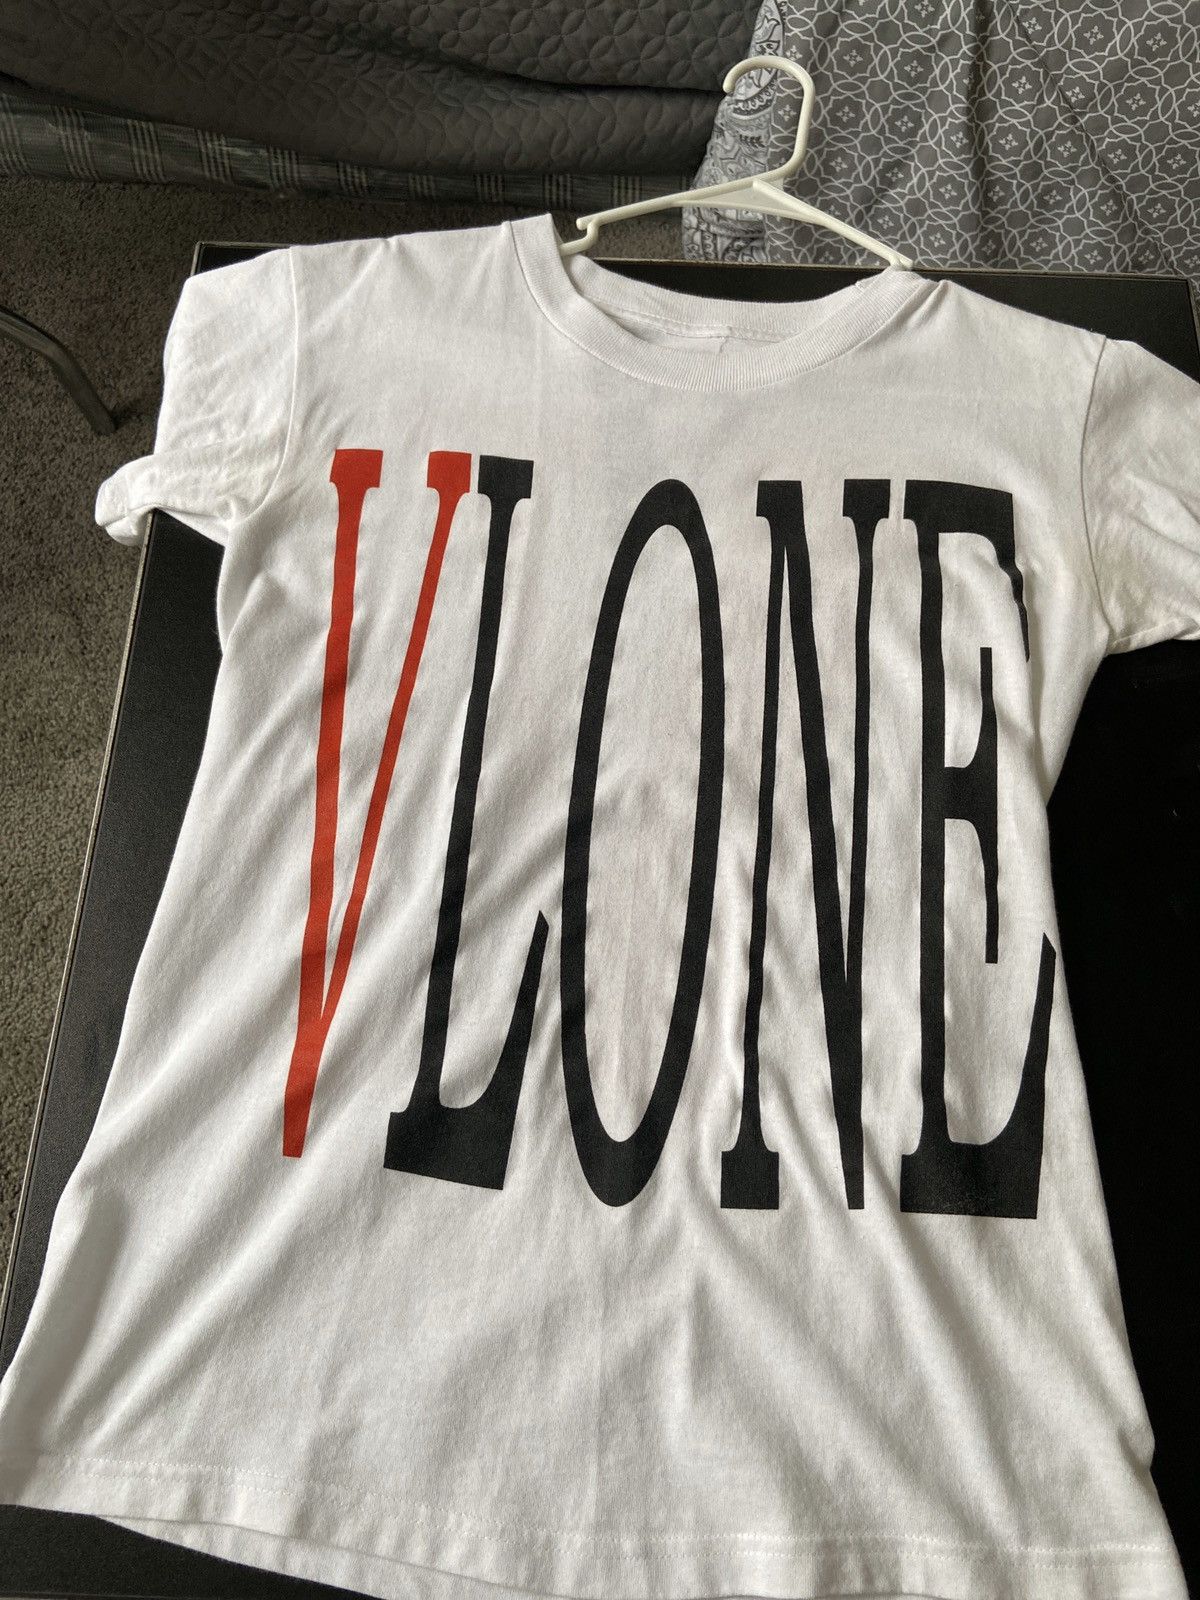 Vlone Vlone Red Reversible Short Sleeve T-Shirt | Grailed